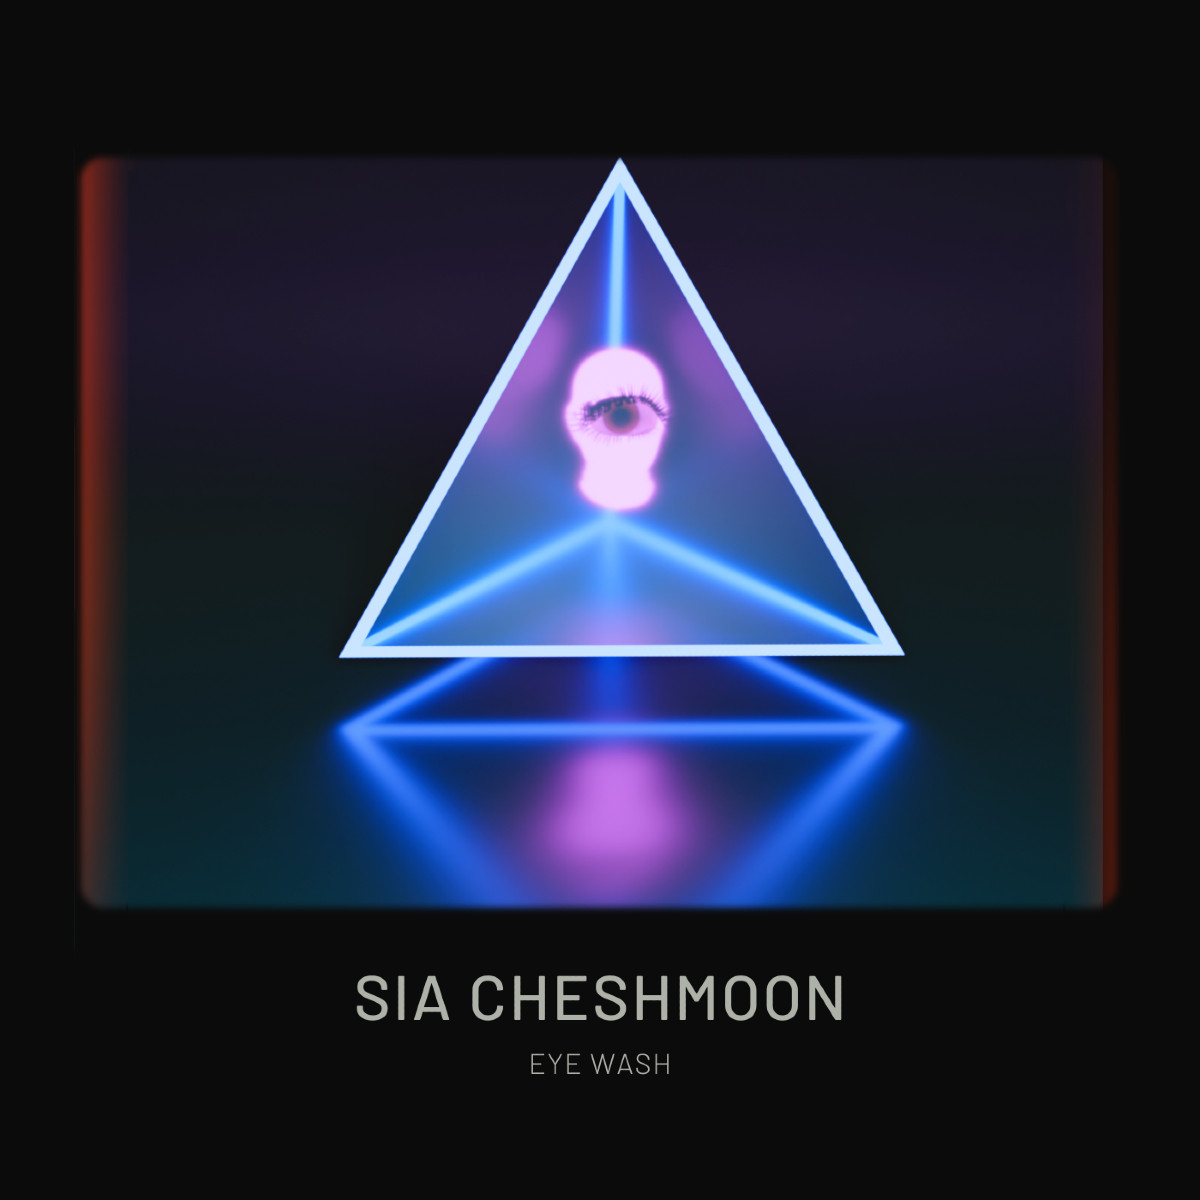 Eyewash - Sia Cheshmoon